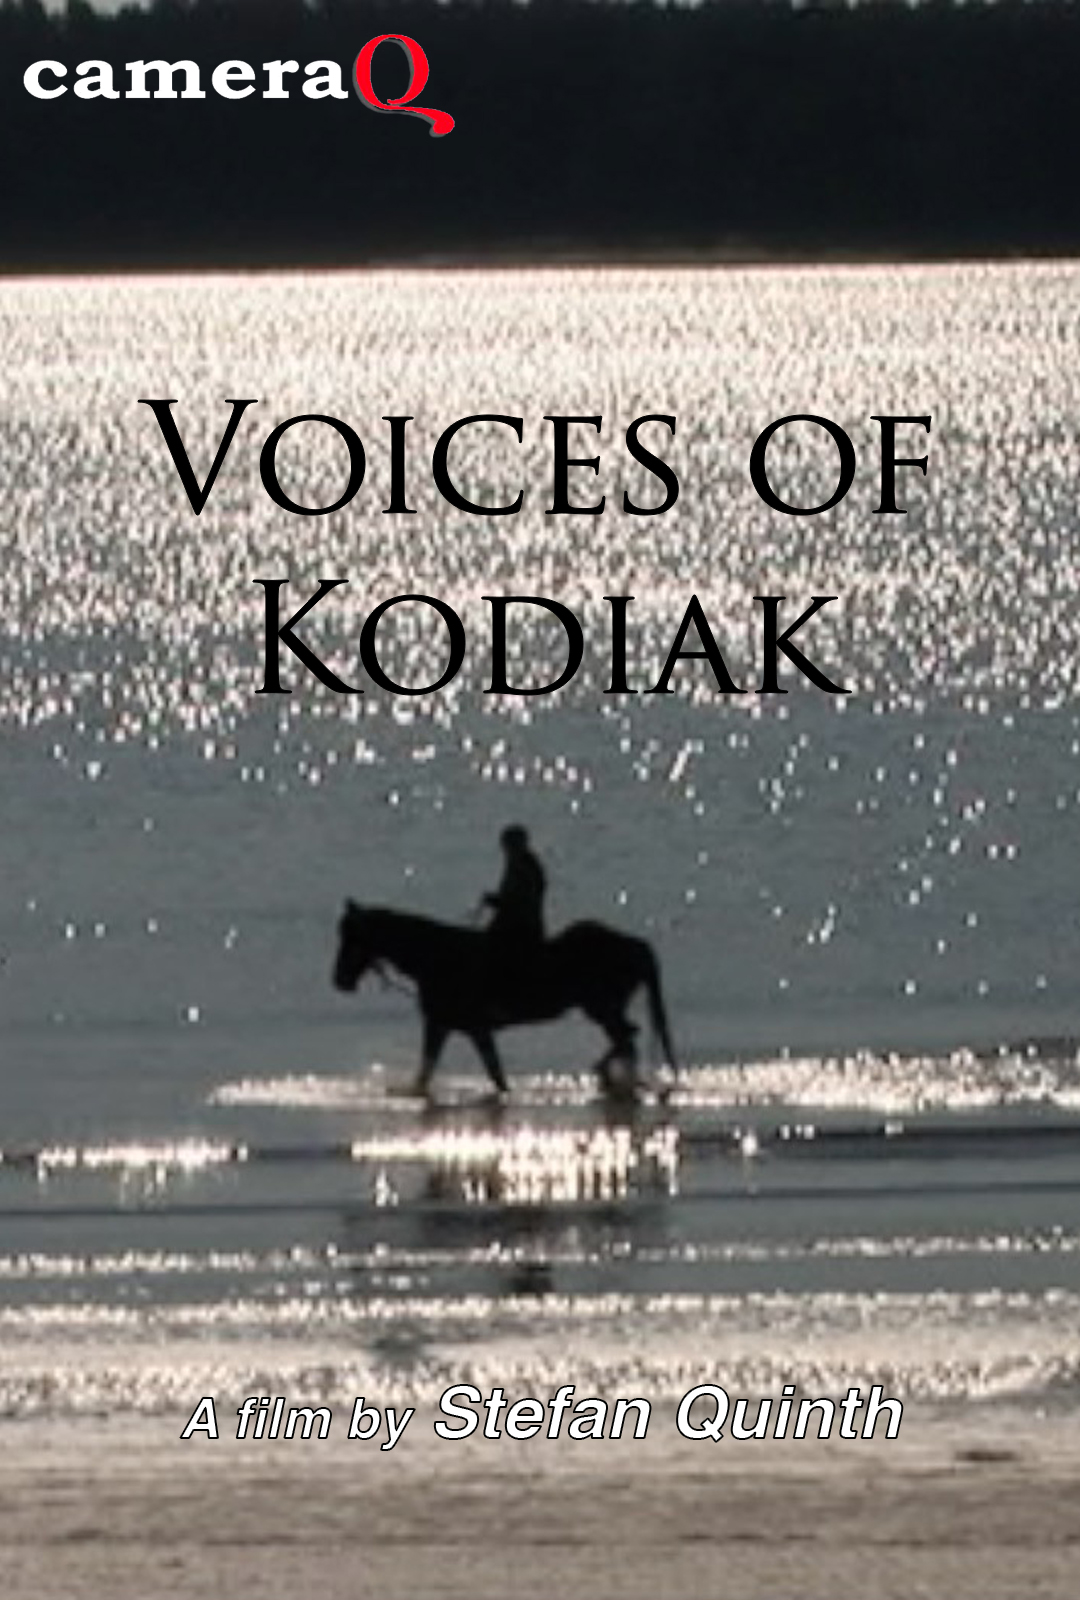 Voices of Kodiak - on demand